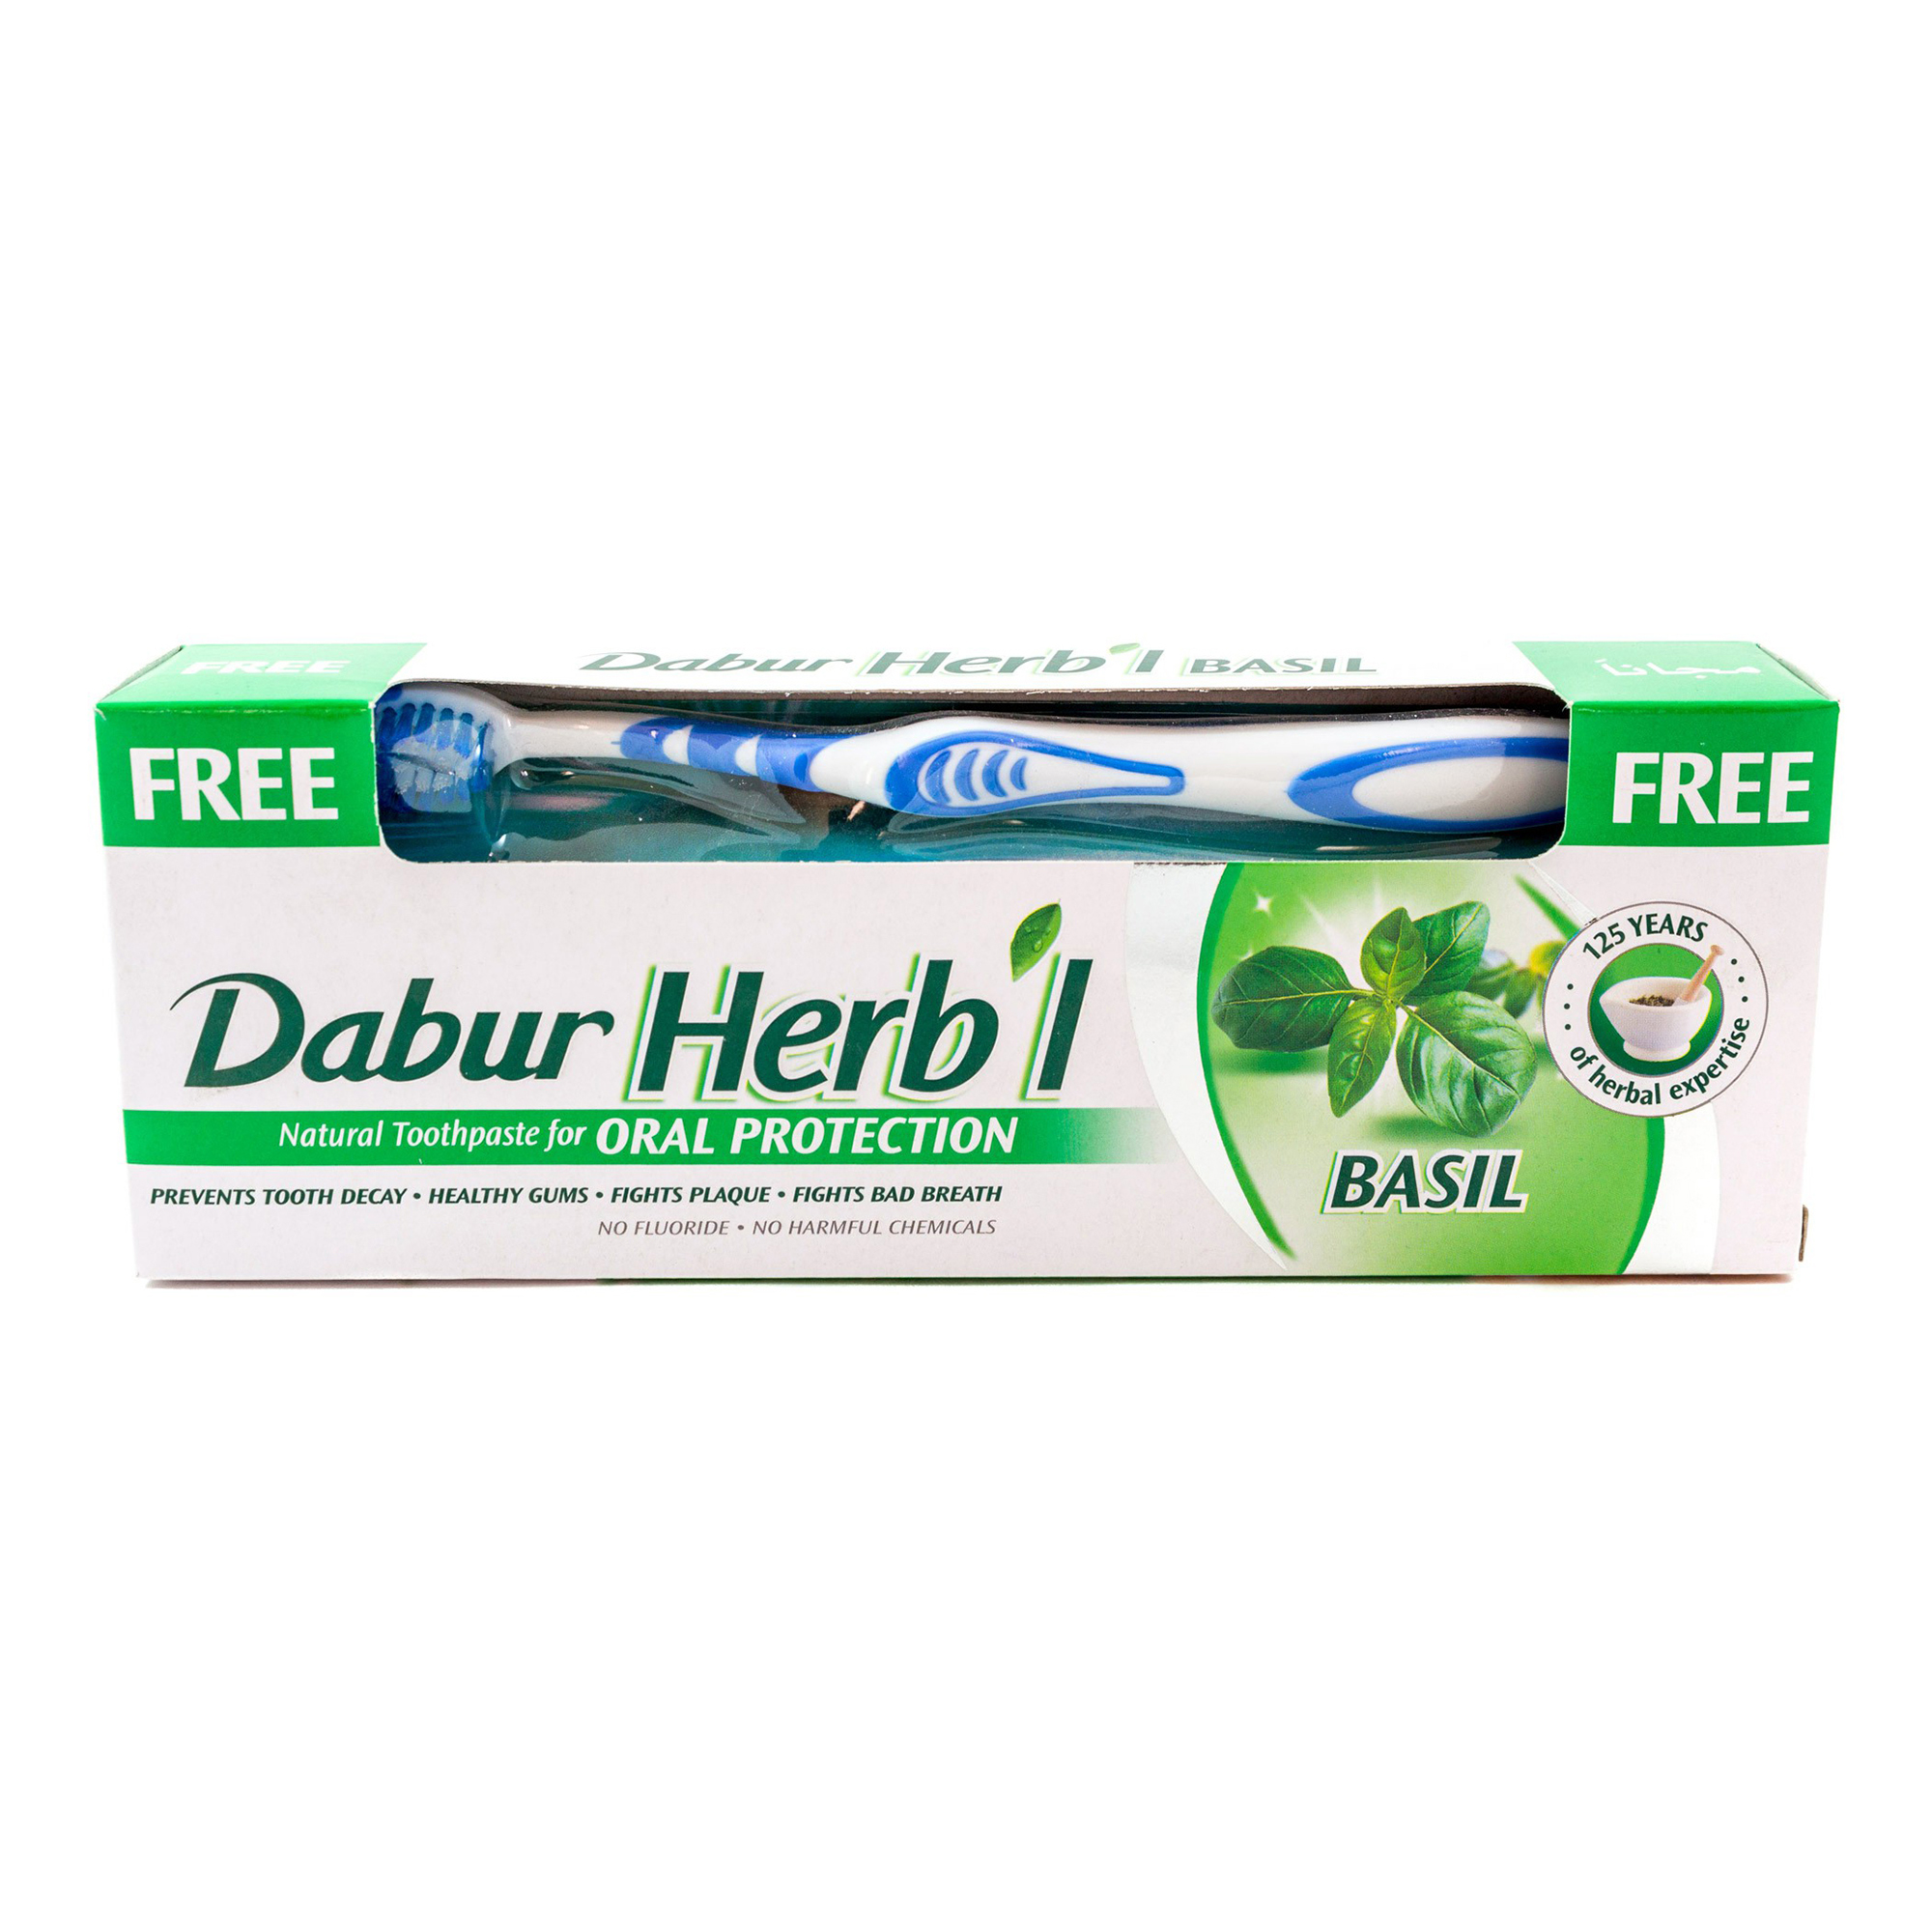 Зубная паста Dabur Herb'l Basil с зубной щеткой 150 г зубная паста dabur herb l anti ageing антивозрастная 150 г в комплекте с зубной щеткой